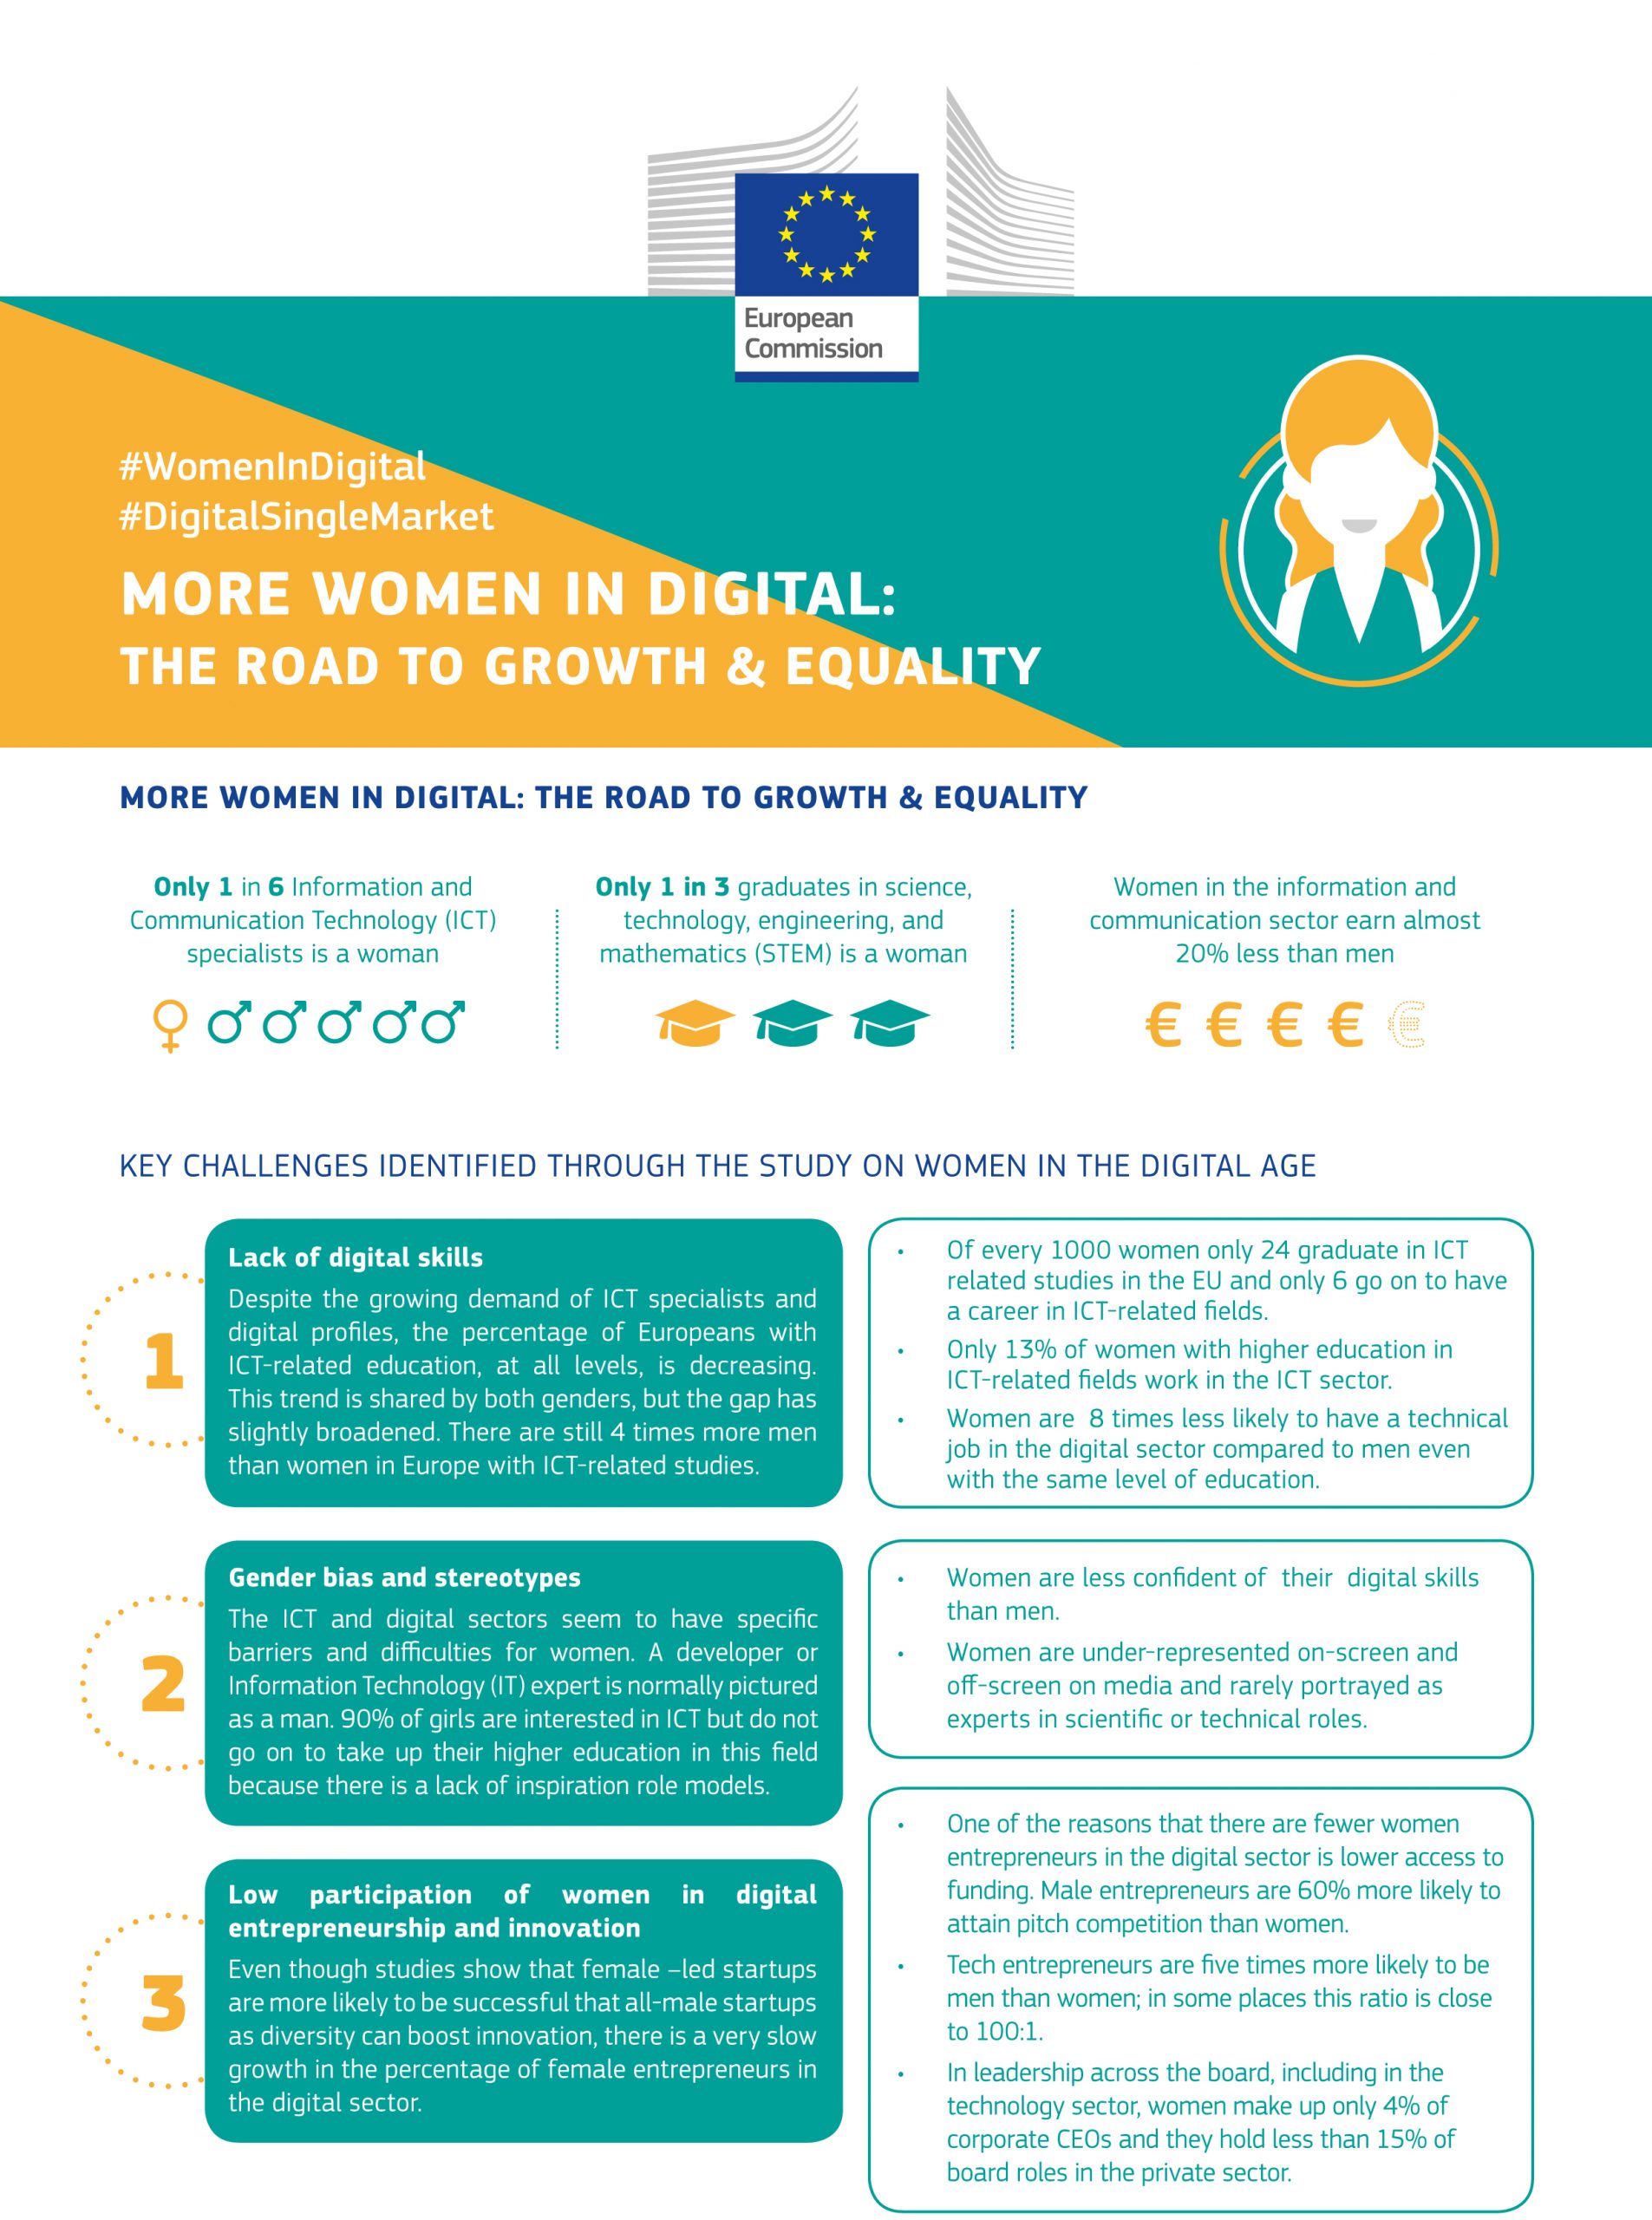 Tabla de retos en el estudio de mujeres en la era digital